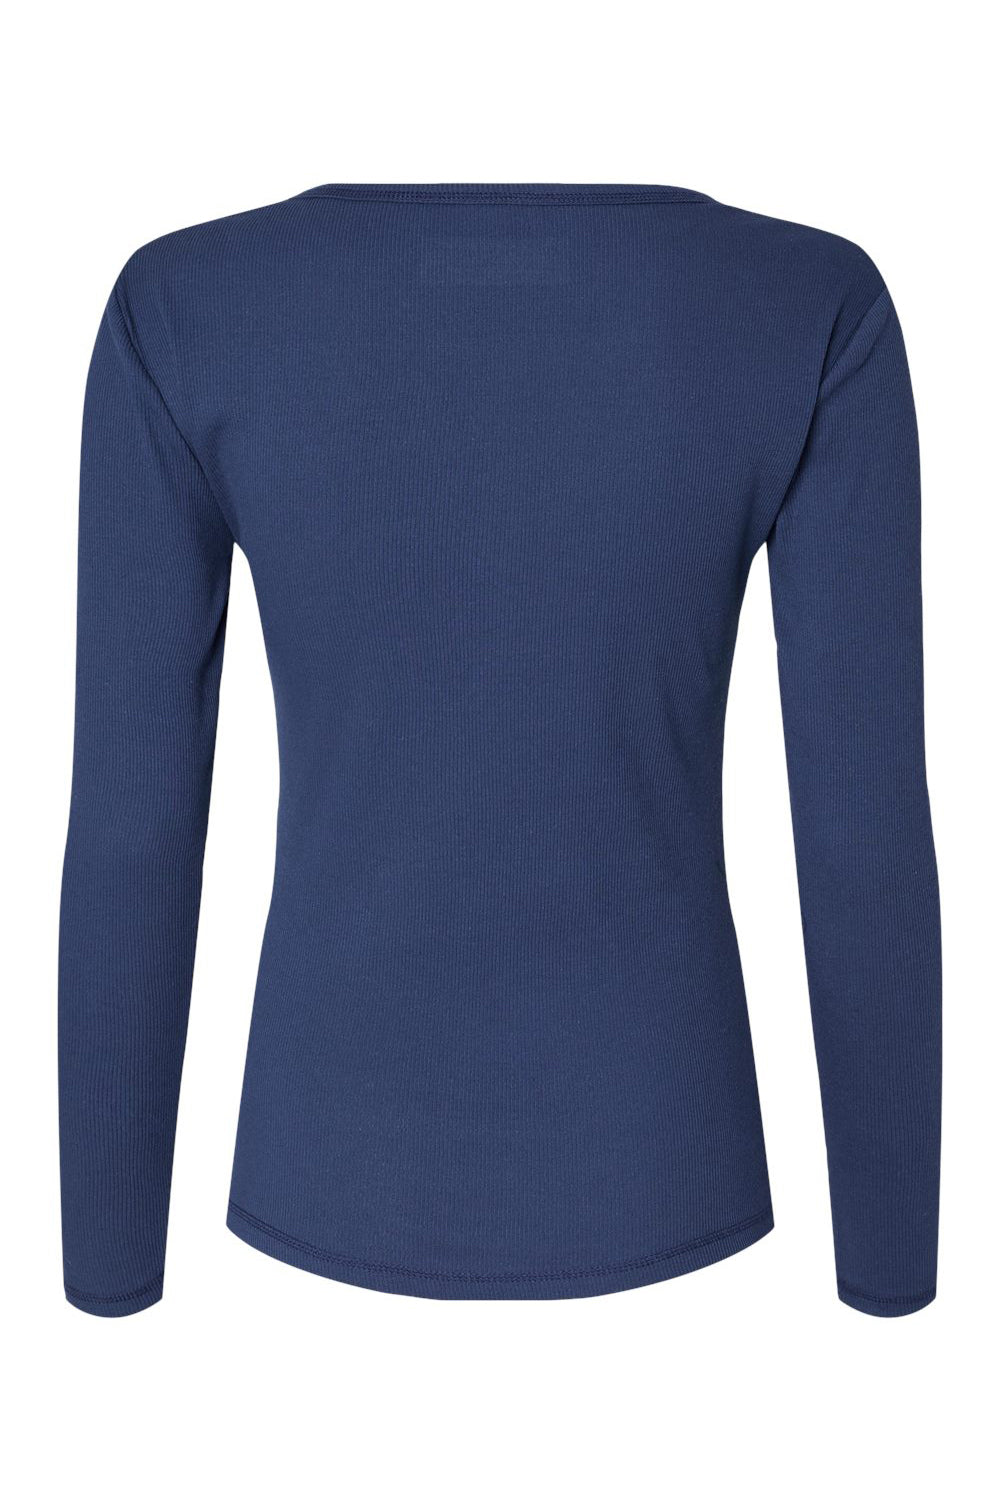 Boxercraft BW2402 Womens Harper Long Sleeve Henley T-Shirt Navy Blue Flat Back